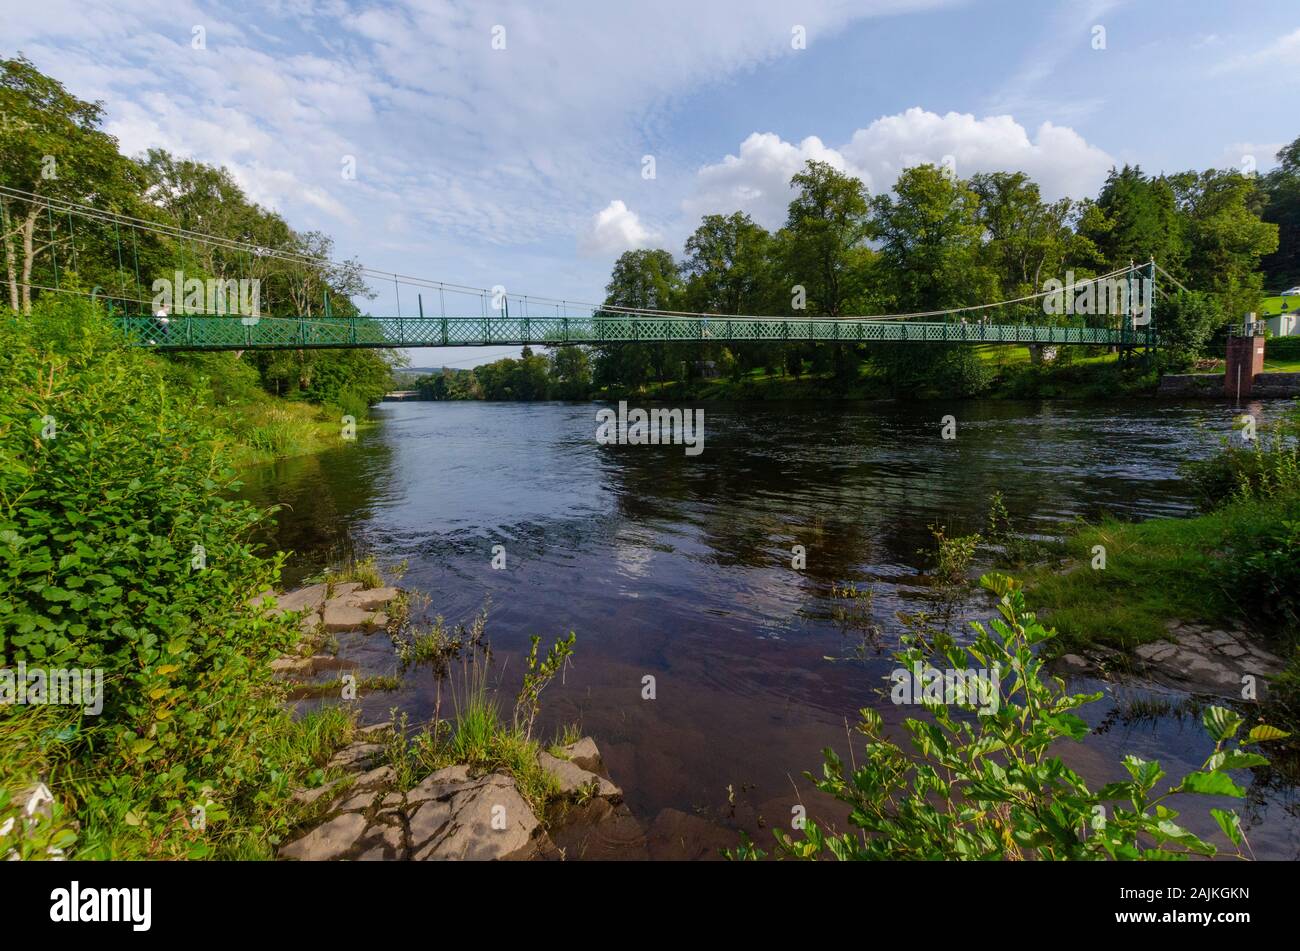 Pont pied sur la rivière Tay à Pitlochry Perthshire Scotland UK Banque D'Images